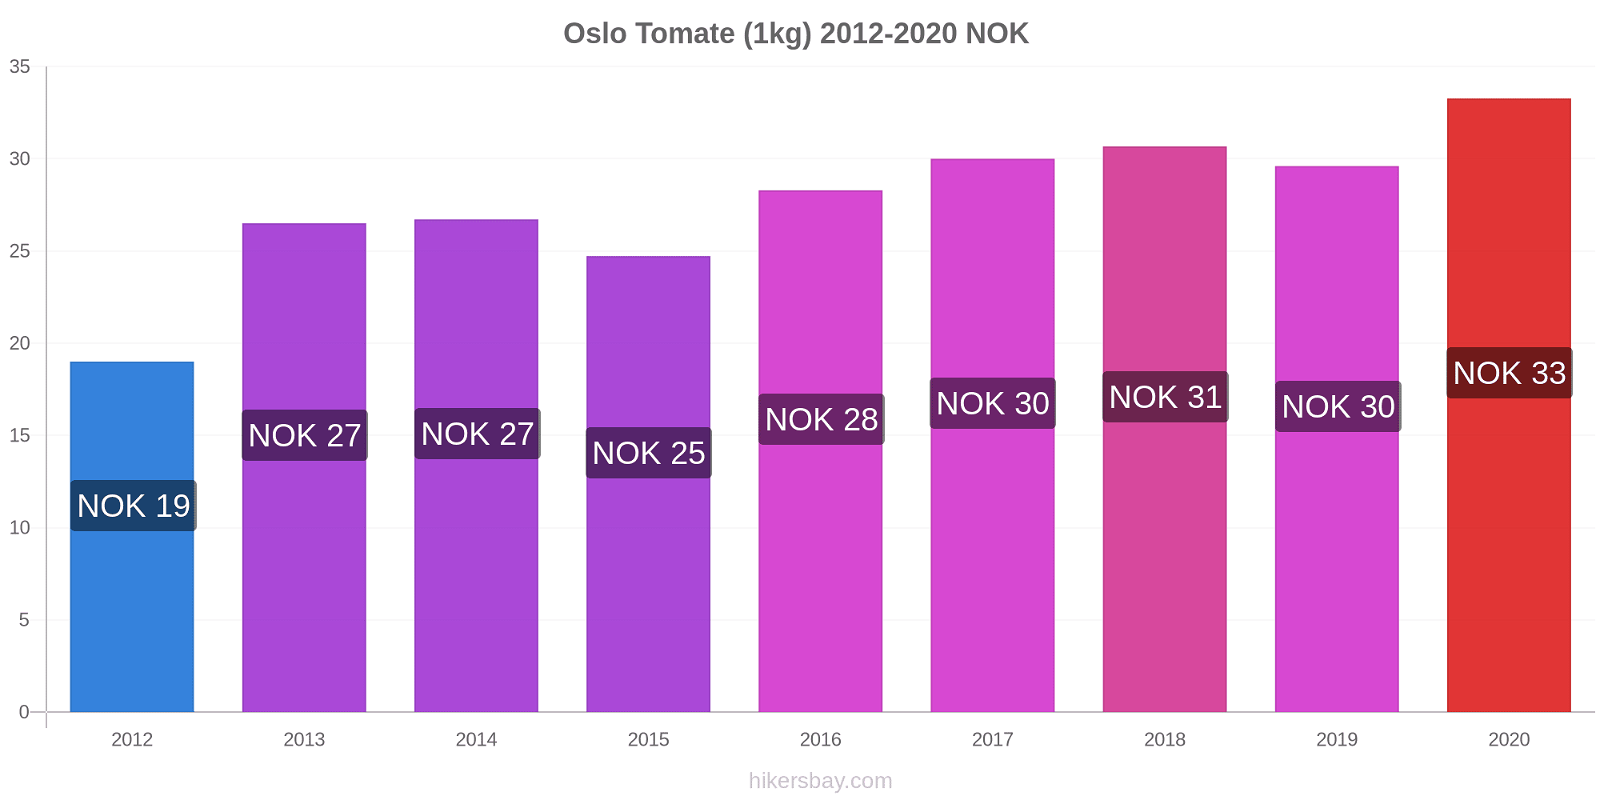 Oslo modificări de preț Tomate (1kg) hikersbay.com